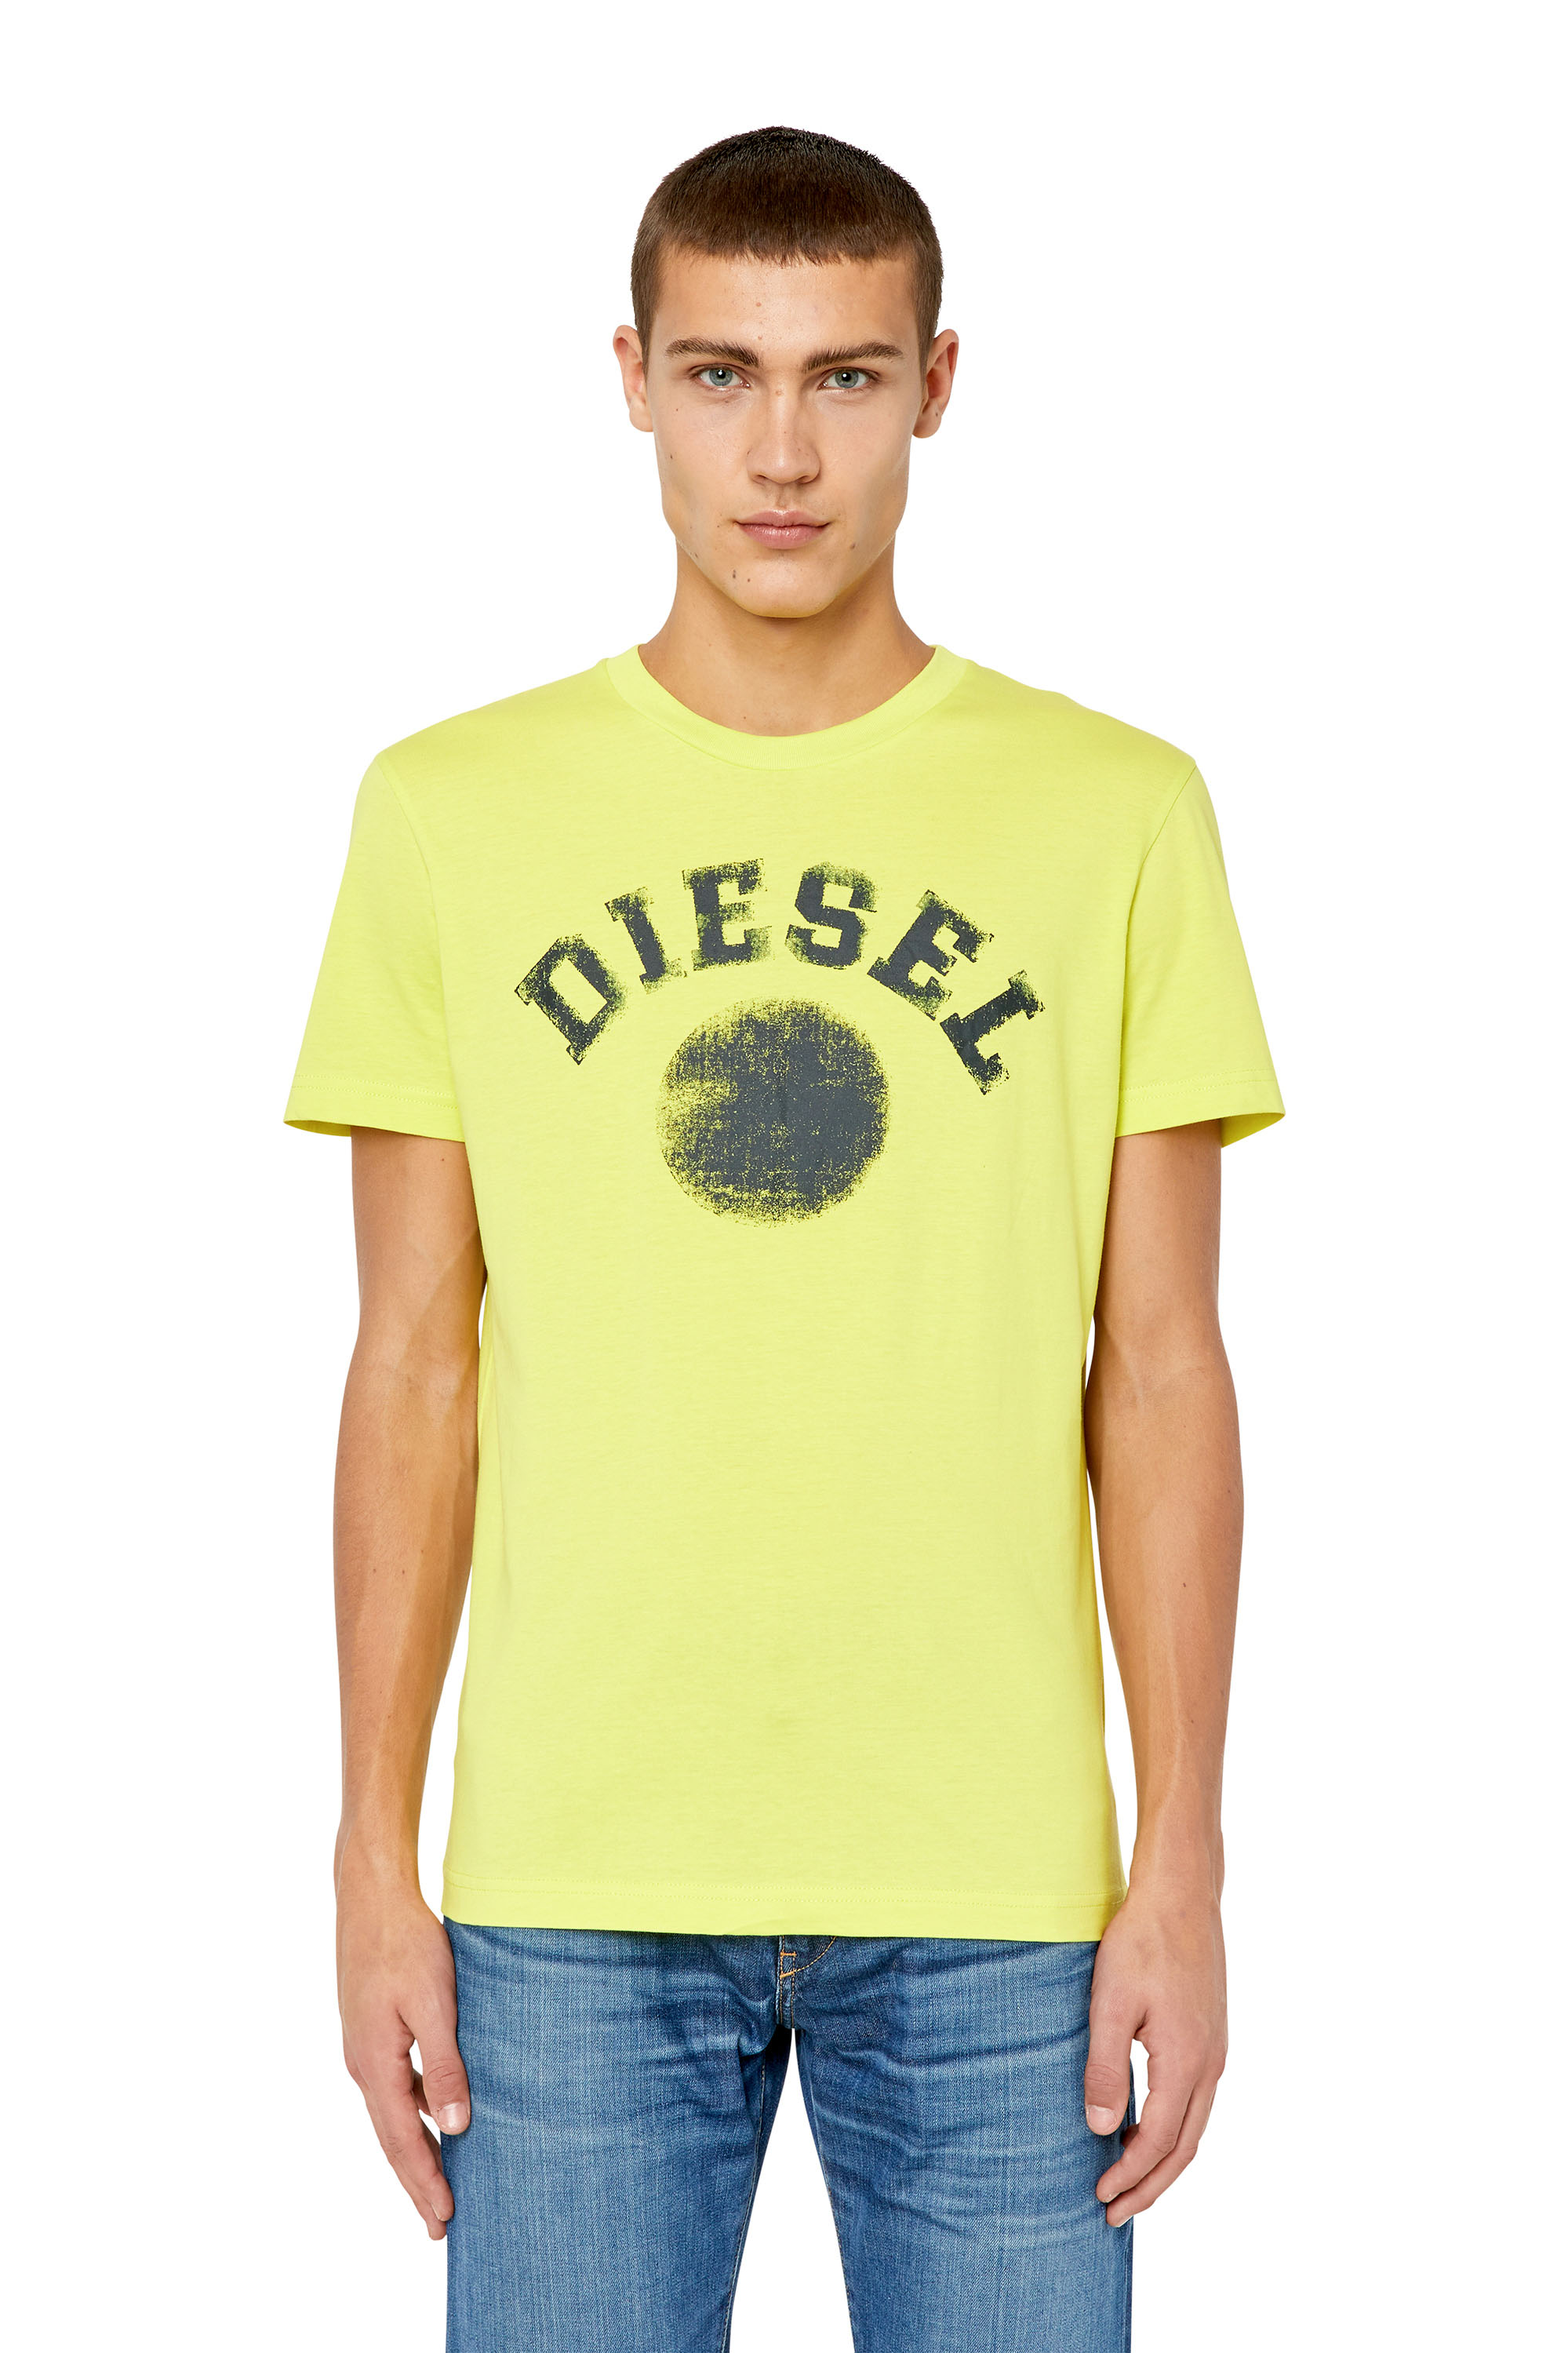 Diesel - T-DIEGOR-K56, Yellow Fluo - Image 1